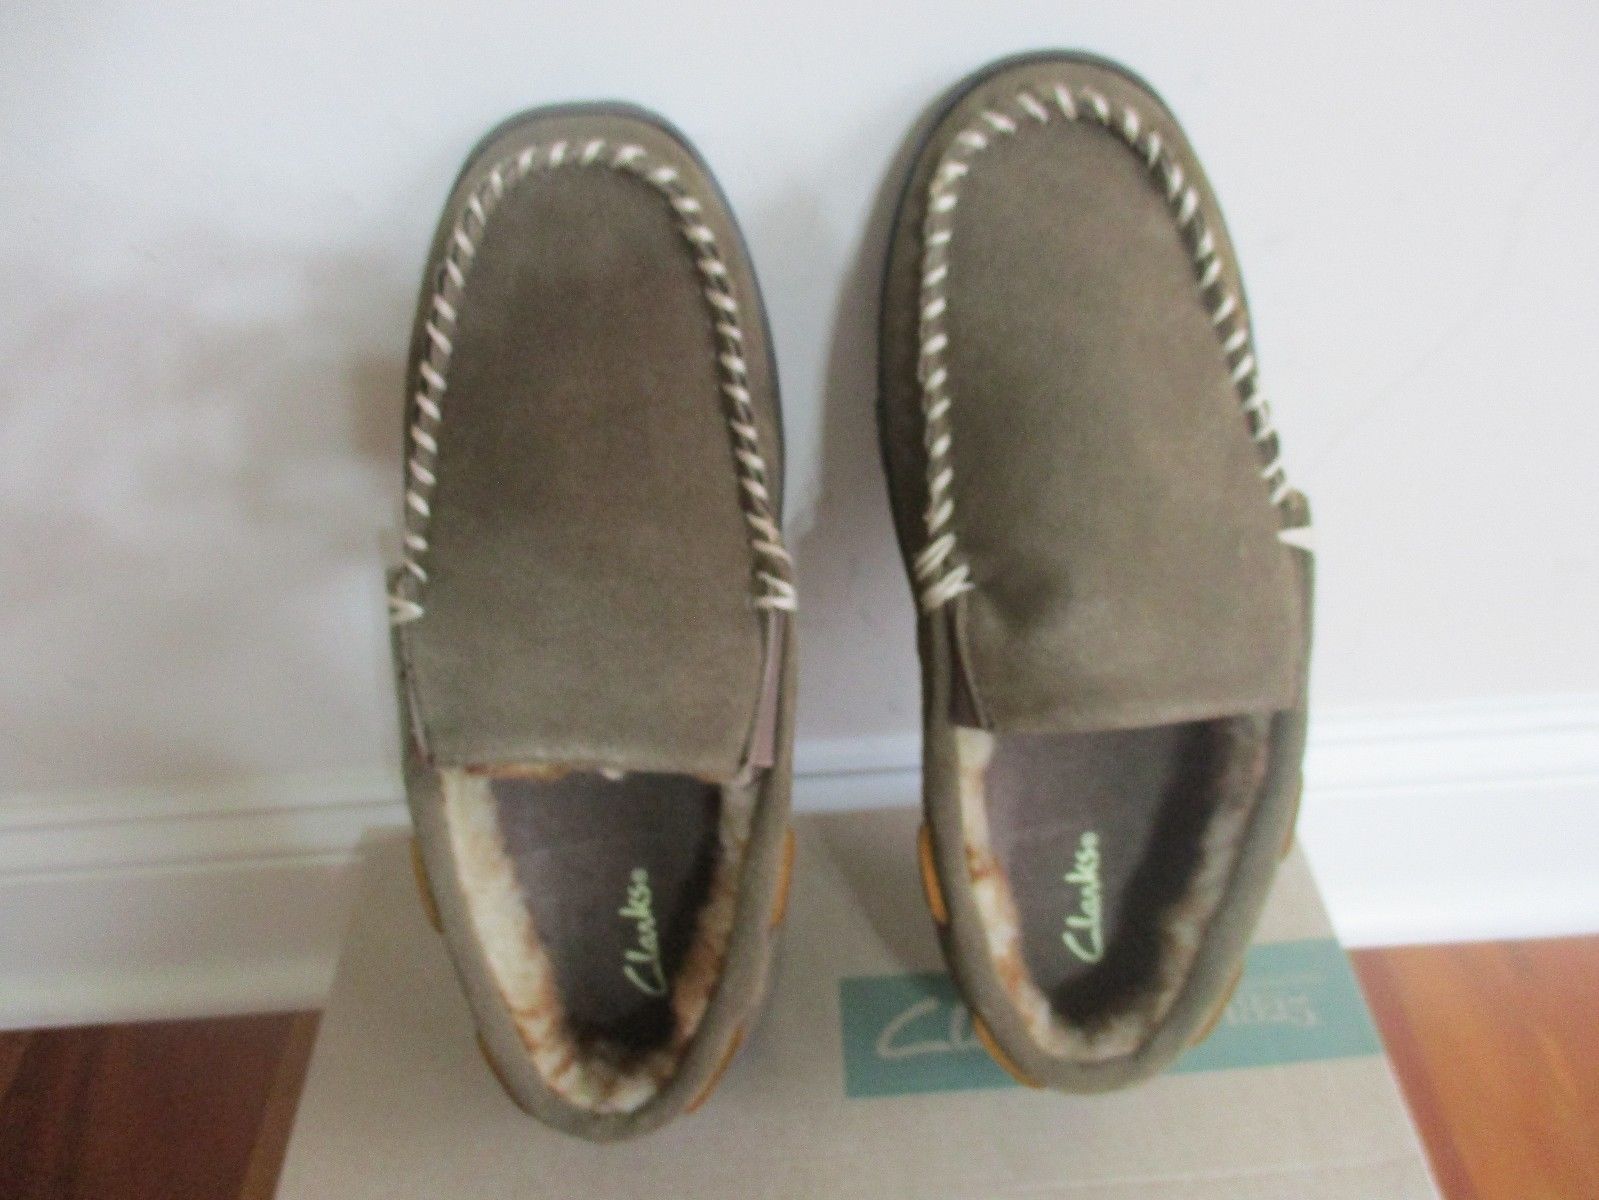 BNIB Clarks Men's slippers, choose from 